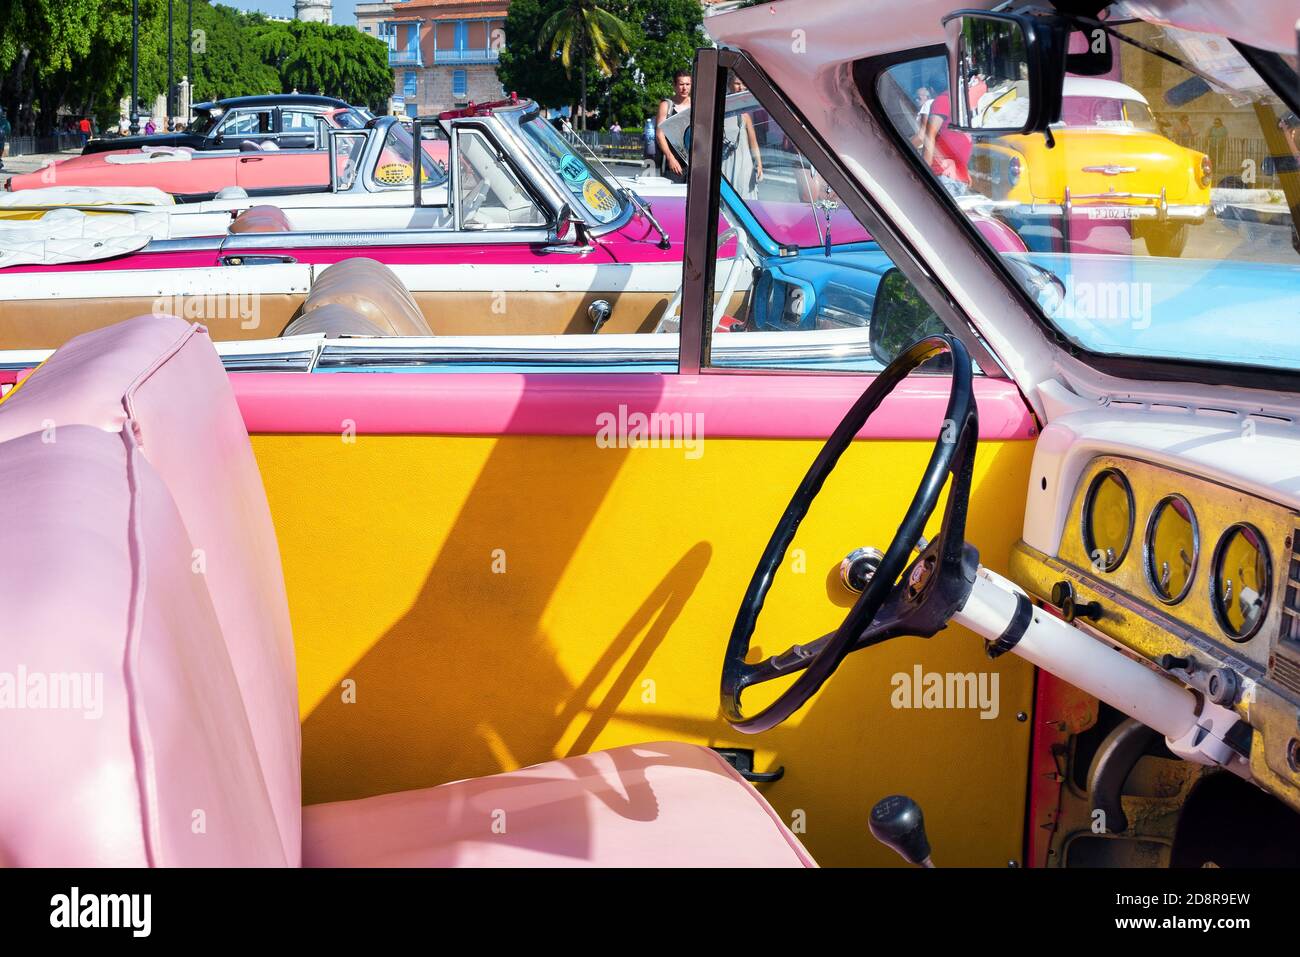 Innenansicht eines farbenfrohen amerikanischen Oldtimers, das auf einer Straße in Havanna, Kuba, geparkt ist. Taxi Kubas. Stockfoto